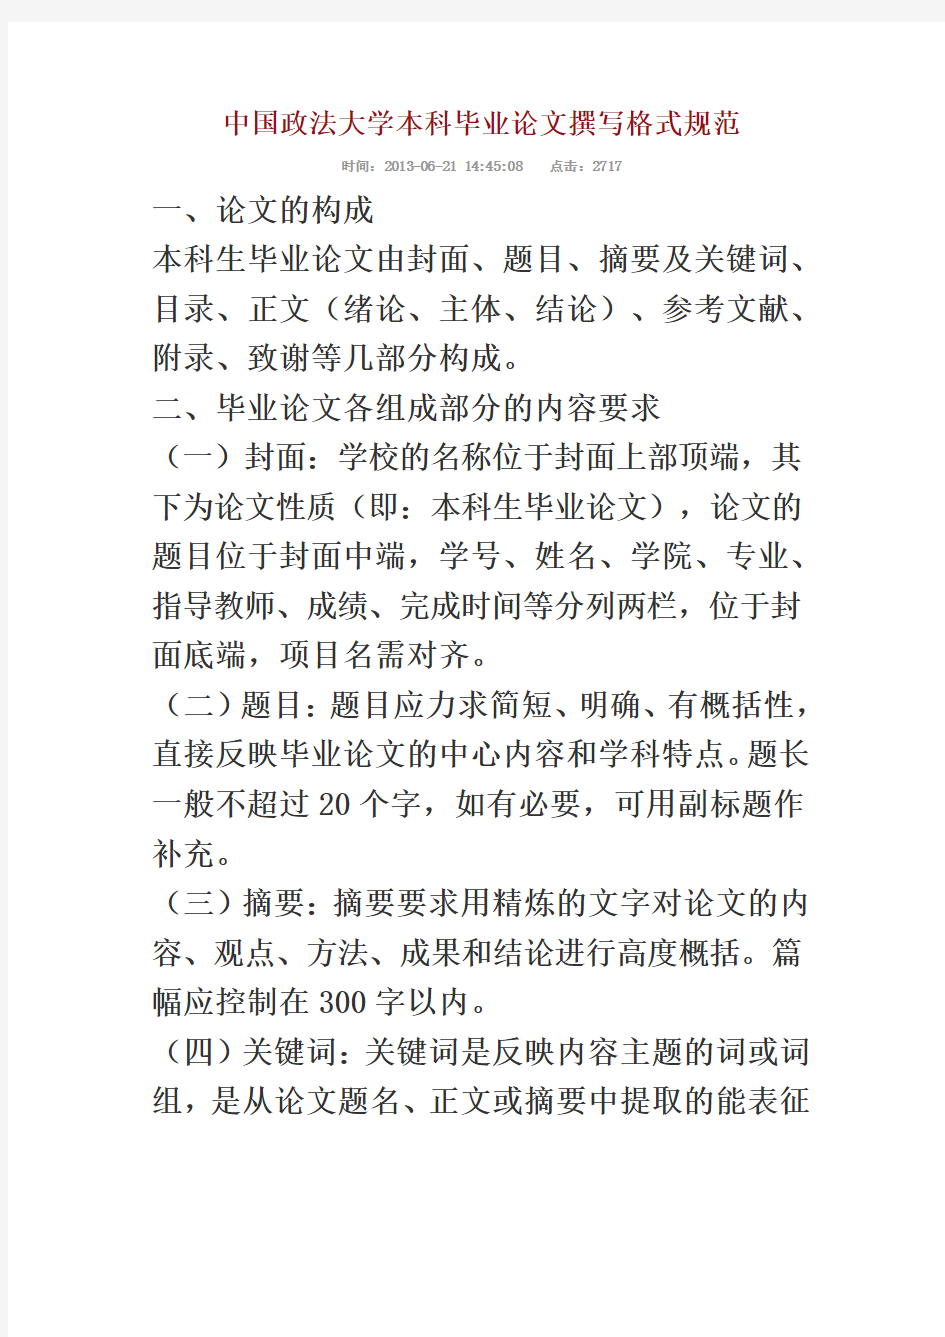 中国政法大学本科毕业论文撰写格式规范